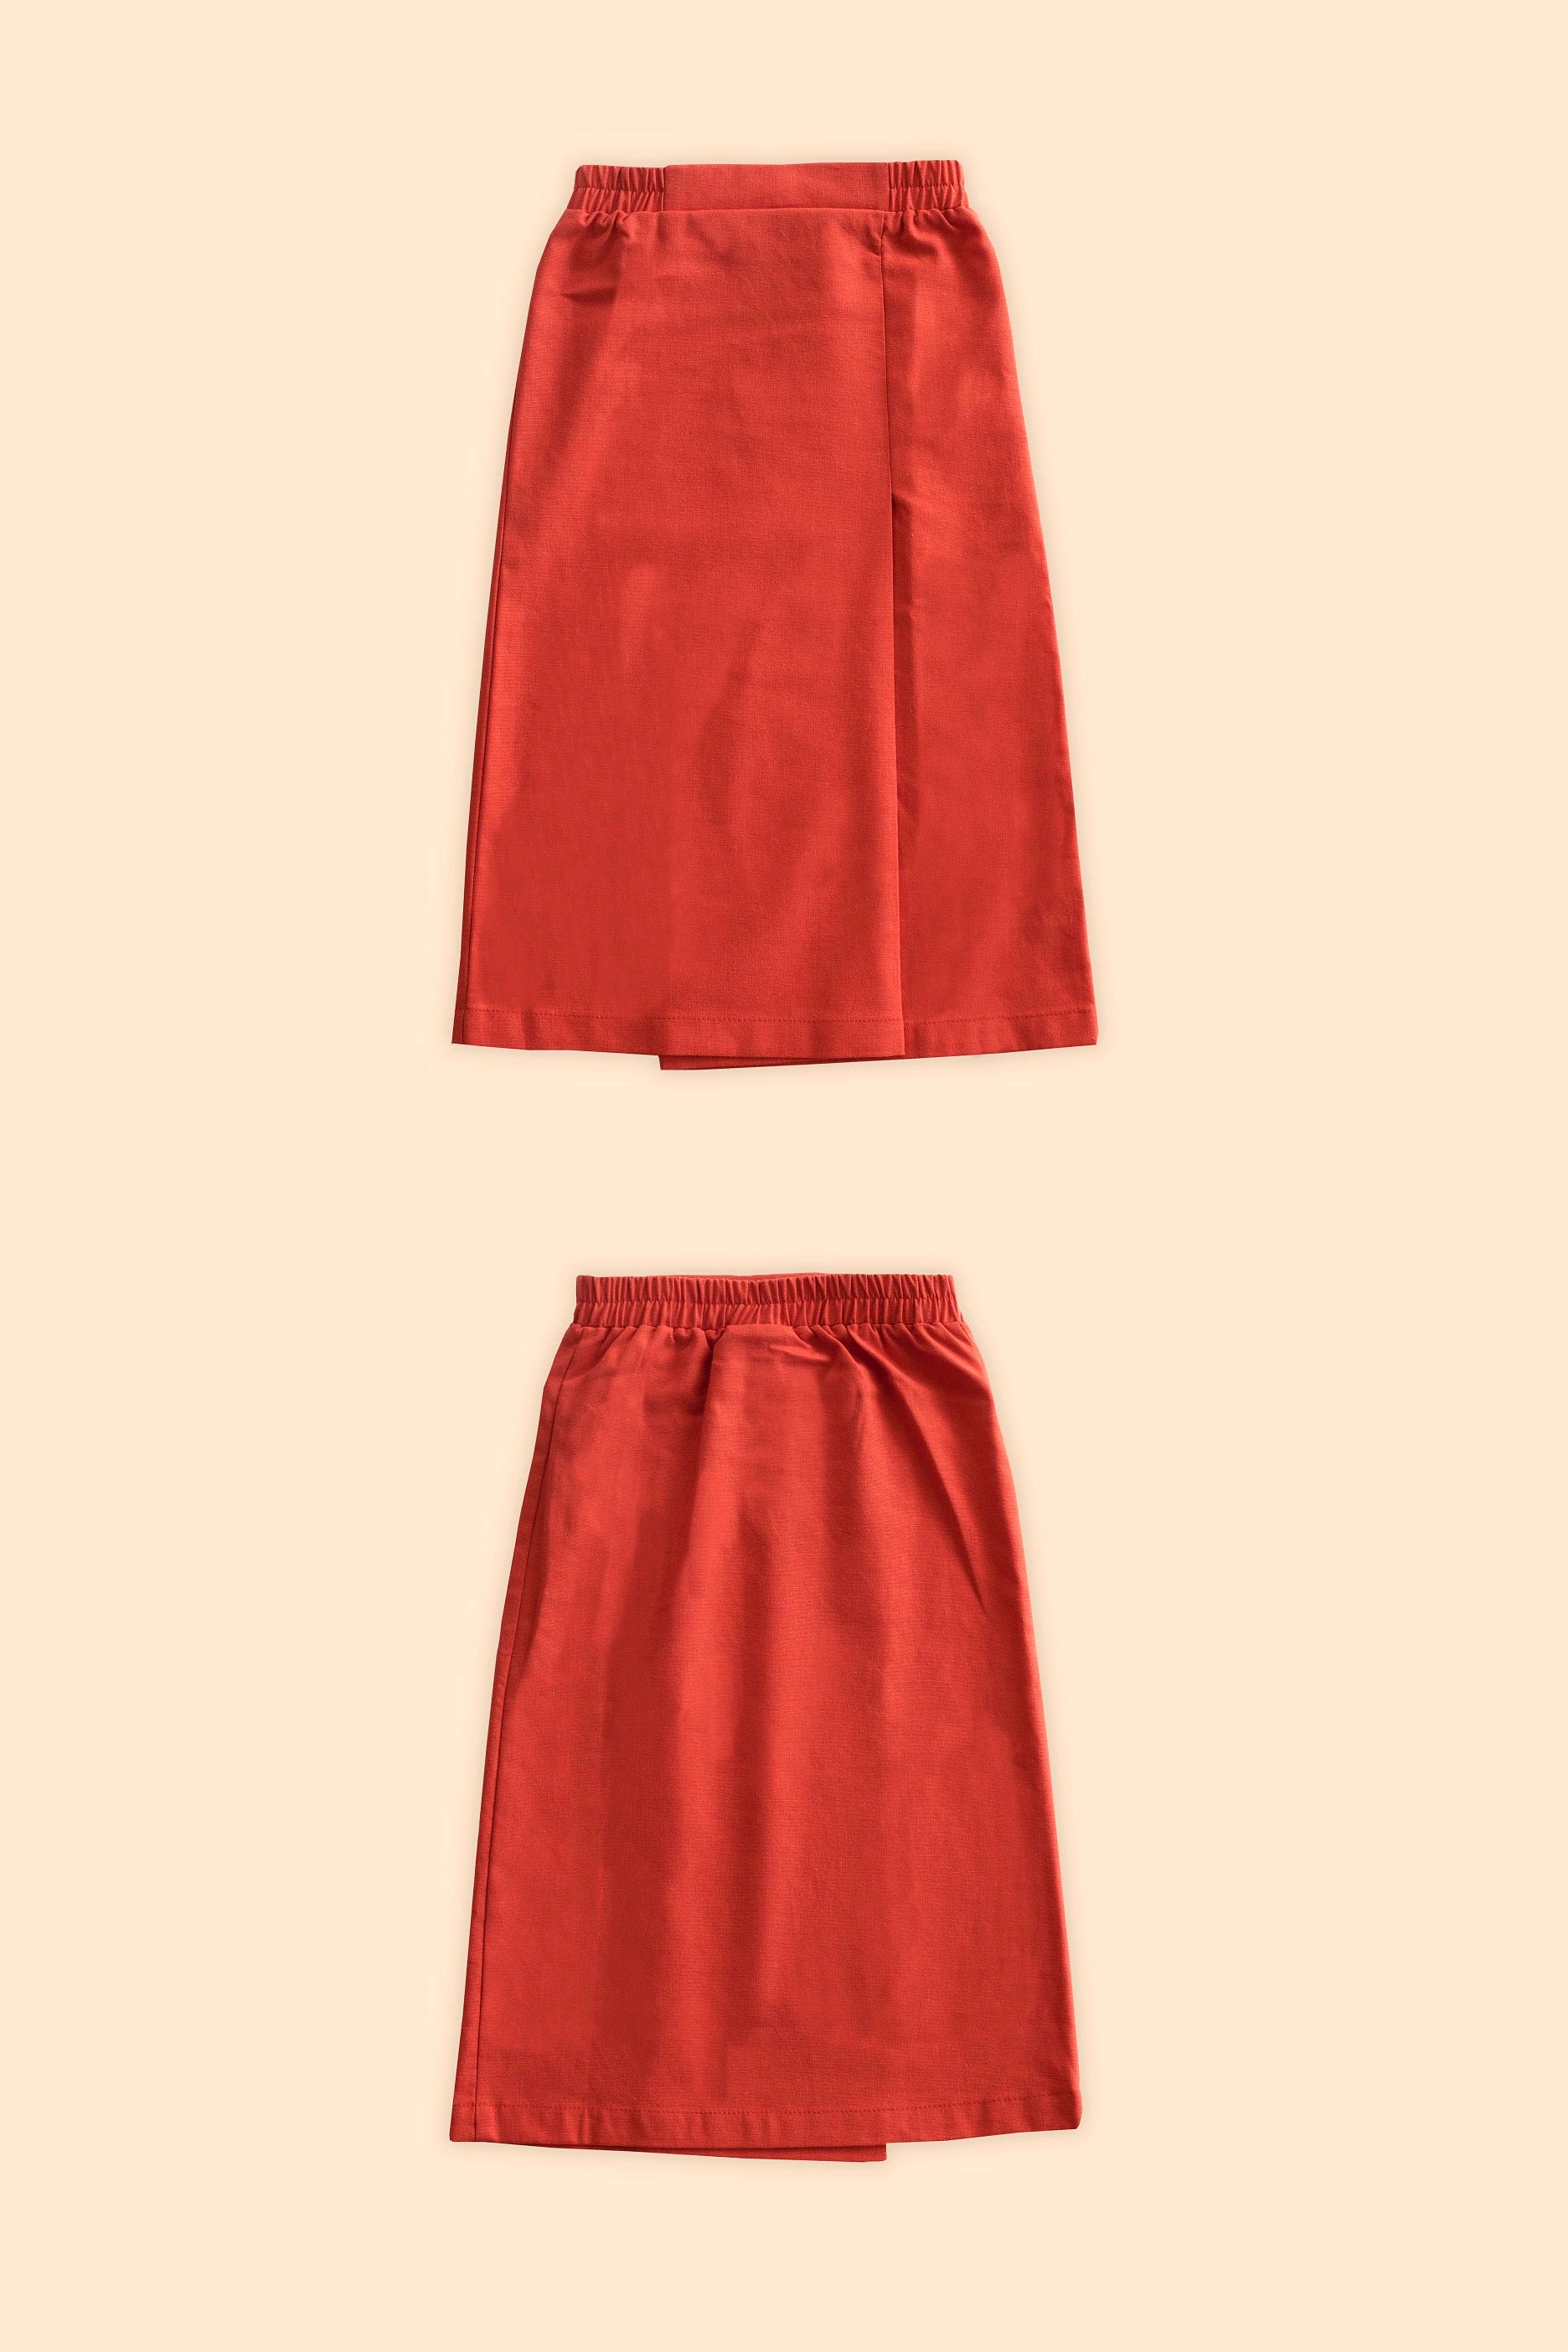 umbikids cahya classic skirt